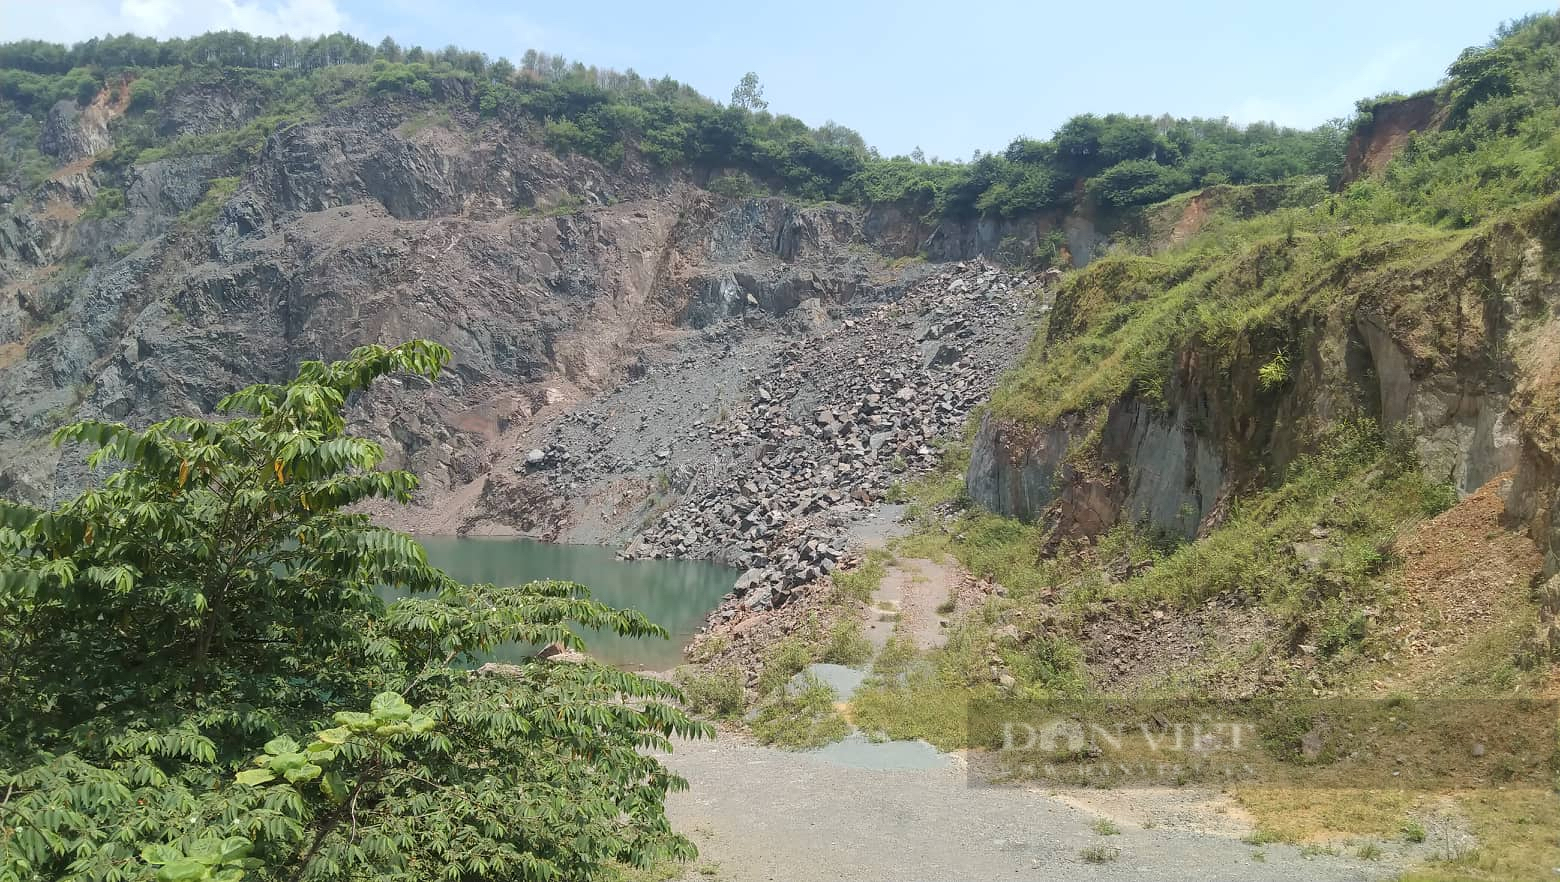 Hậu khai thác khoáng sản ở Hà Nội: Huyện Quốc Oai nêu rõ sai phạm của các ông chủ mỏ - Ảnh 1.